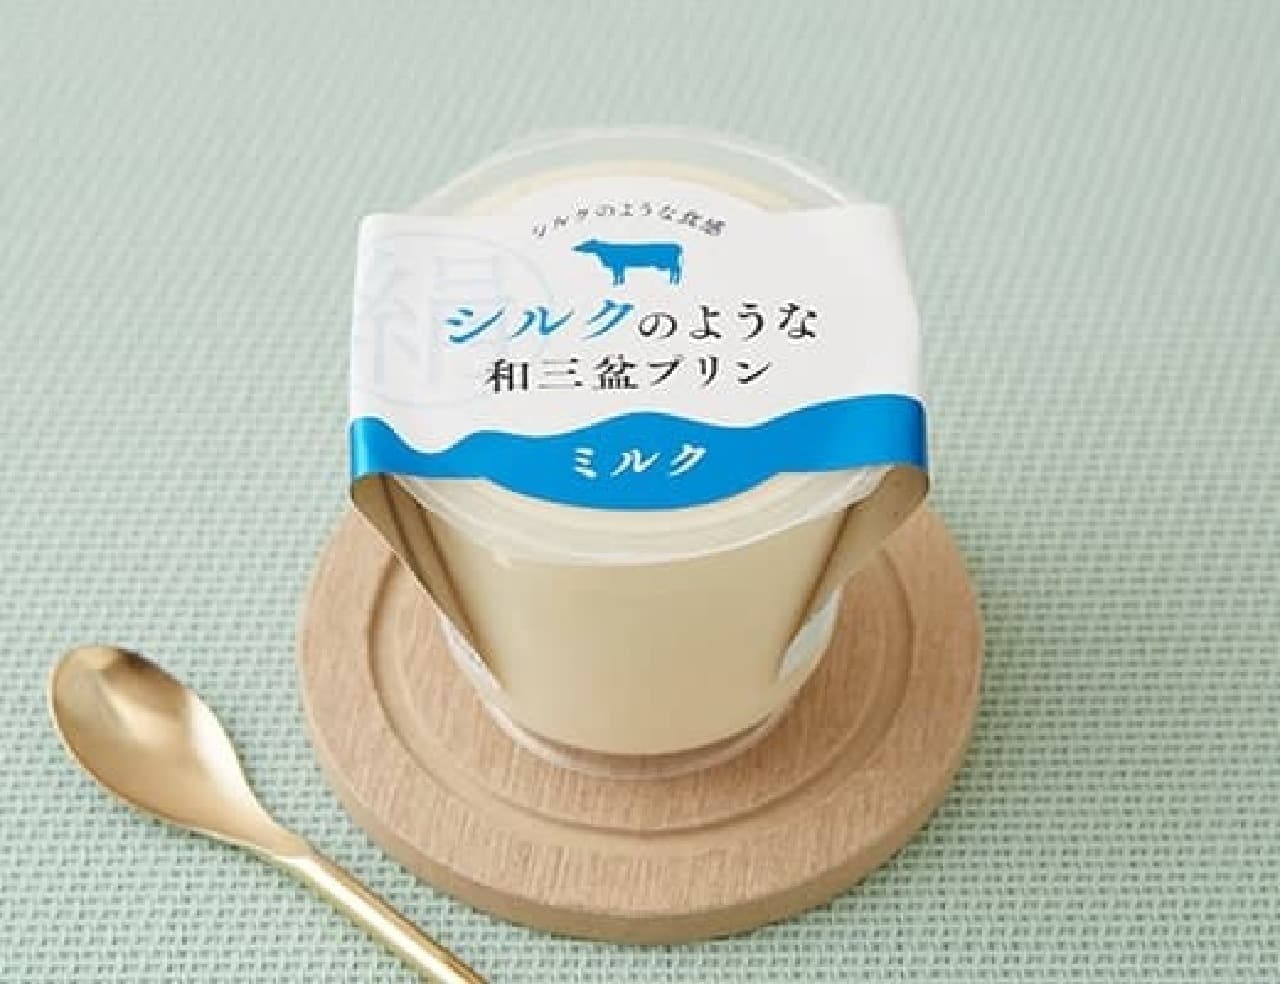 ローソン「徳島産業 シルクのような和三盆プリン ミルク 120g」